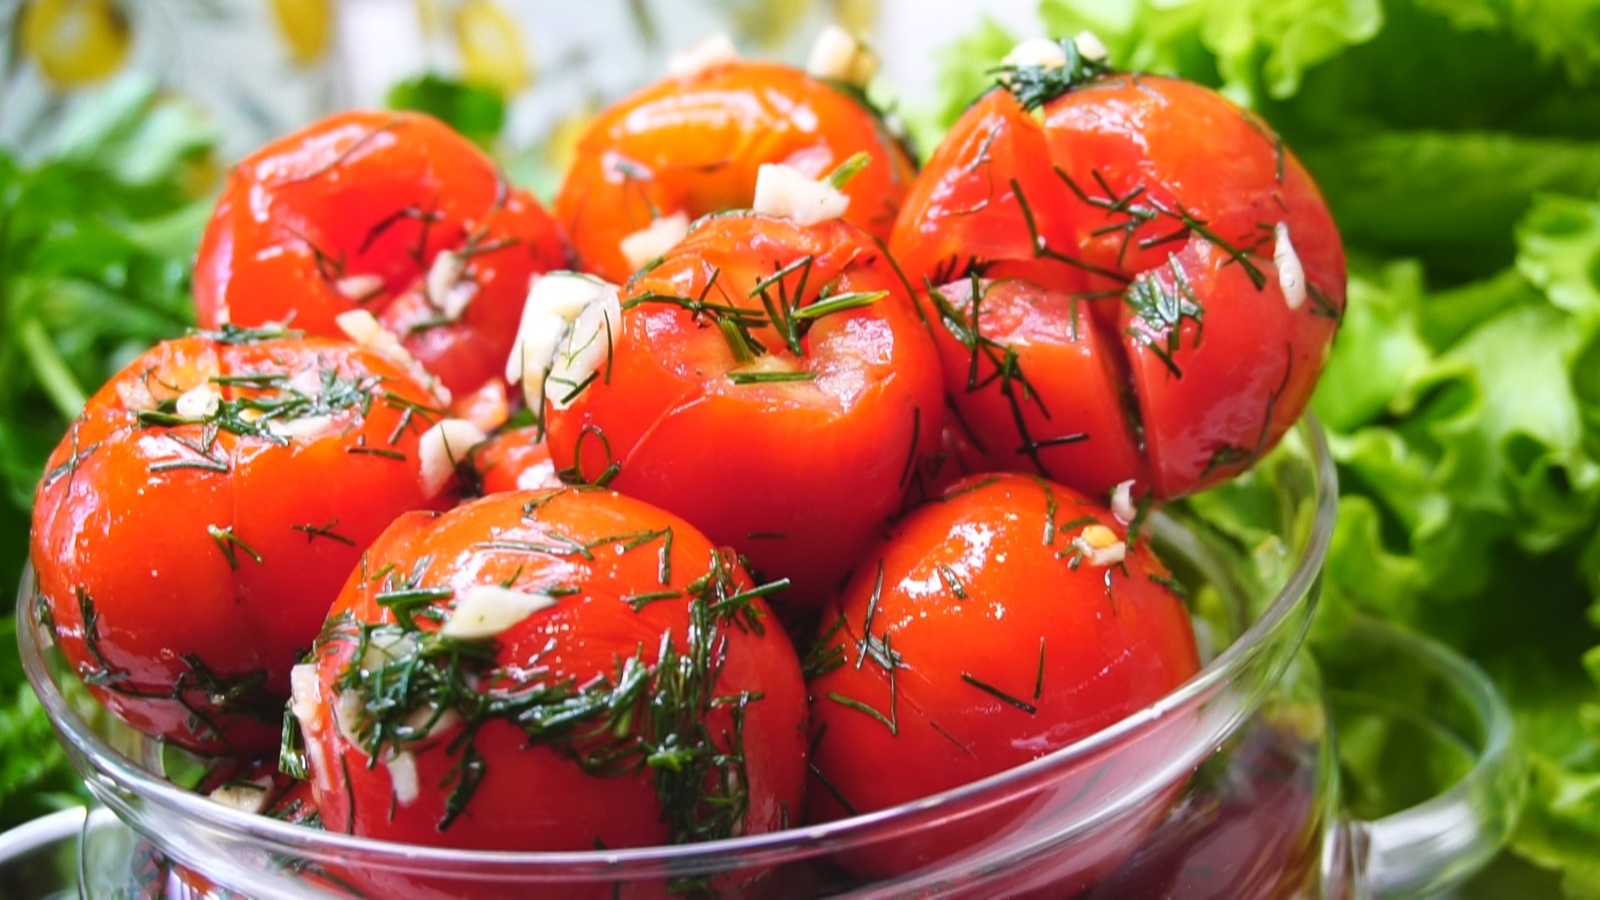 ТОП 10 быстрых пошаговых рецептов малосольных помидор на зиму в пакете